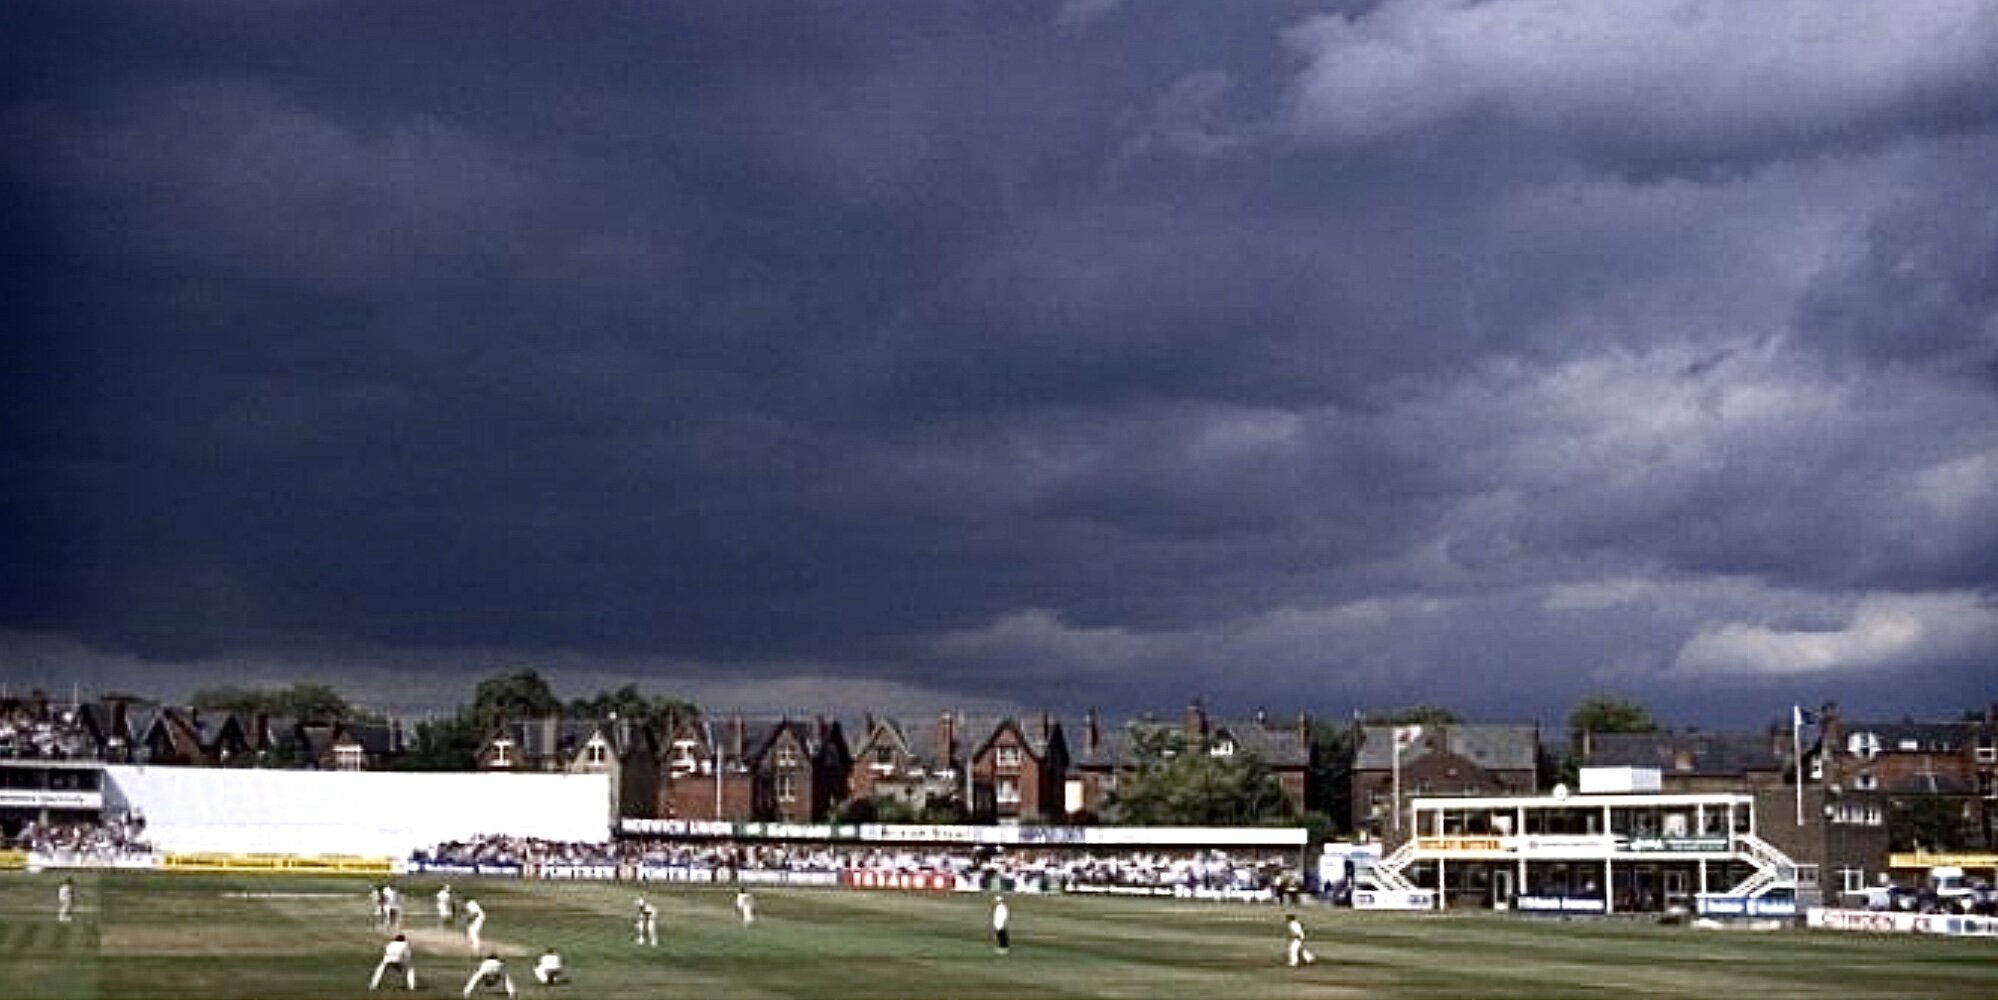 Cricket Ground, 1990s